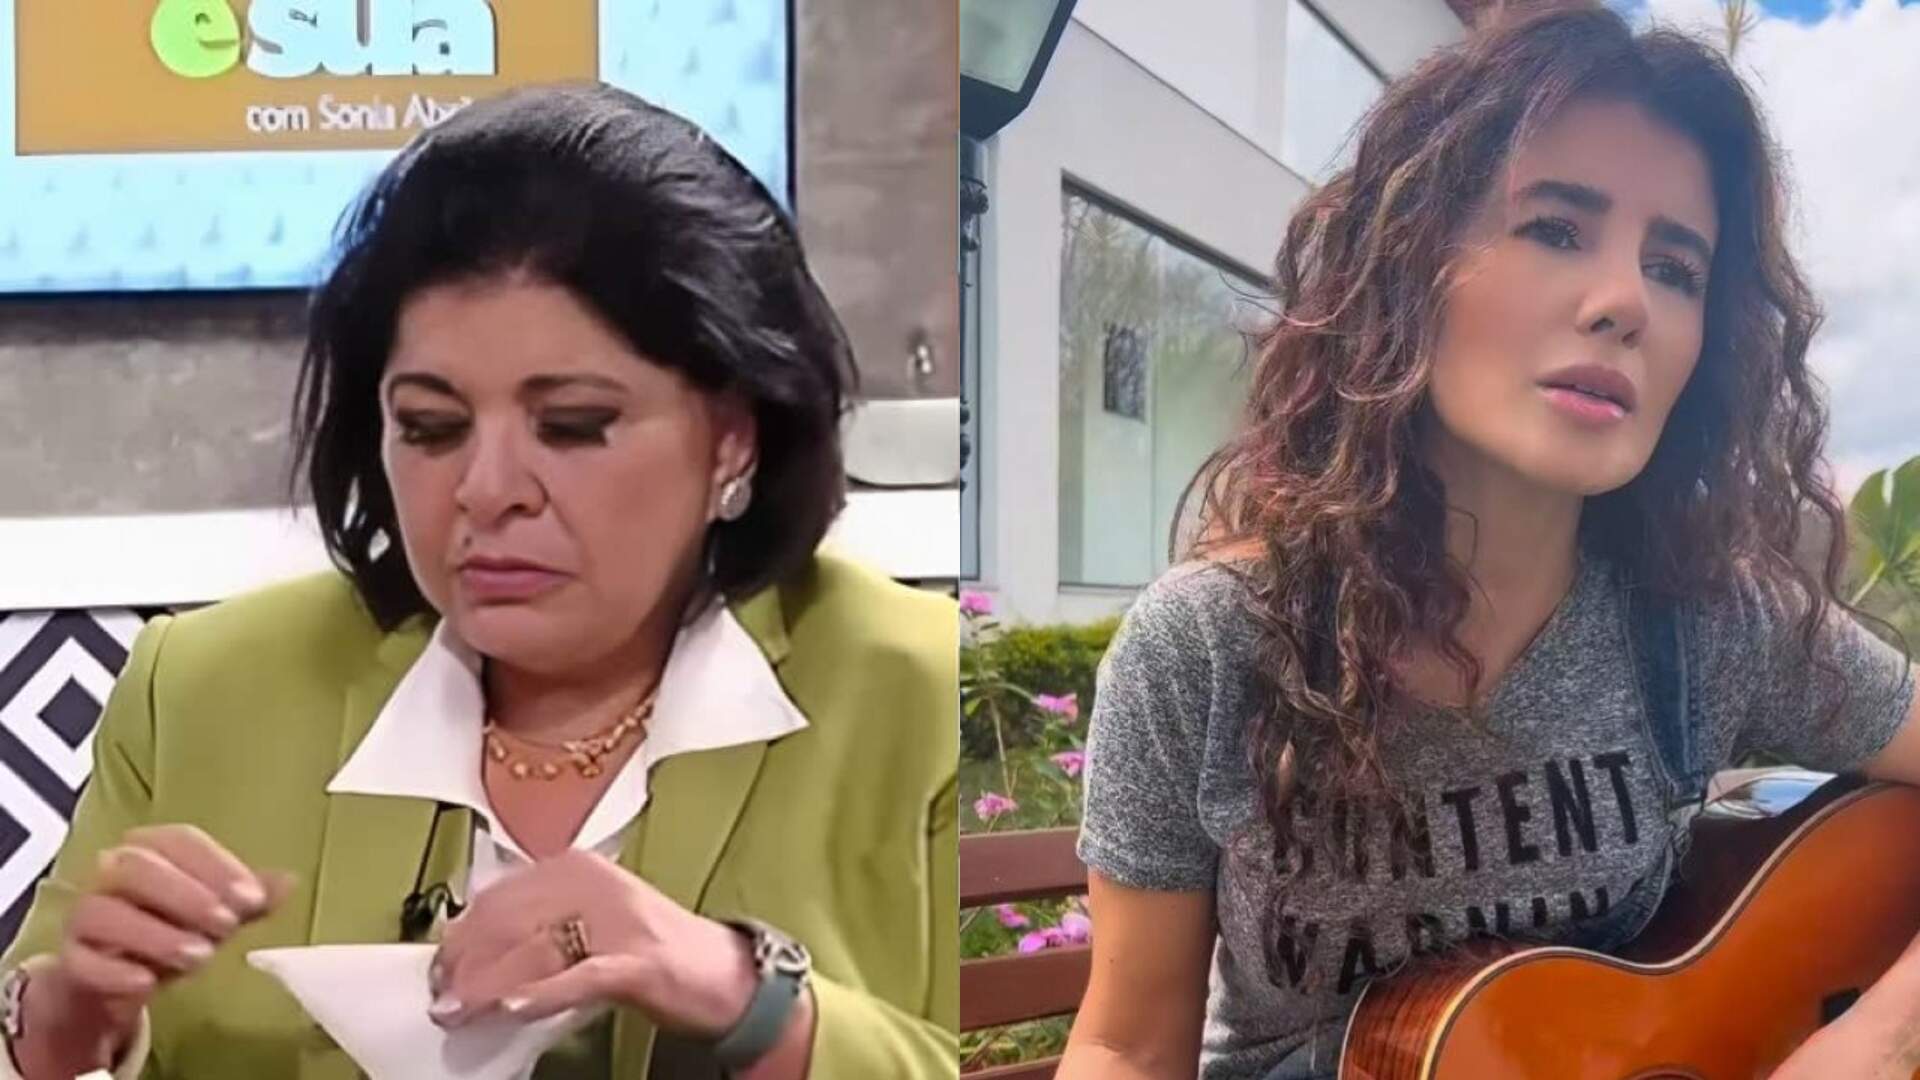 Roberta Miranda não perde a oportunidade e alfineta falta de pioneirismo em Paula Fernandes: “Fez p*rra nenhuma” - Metropolitana FM